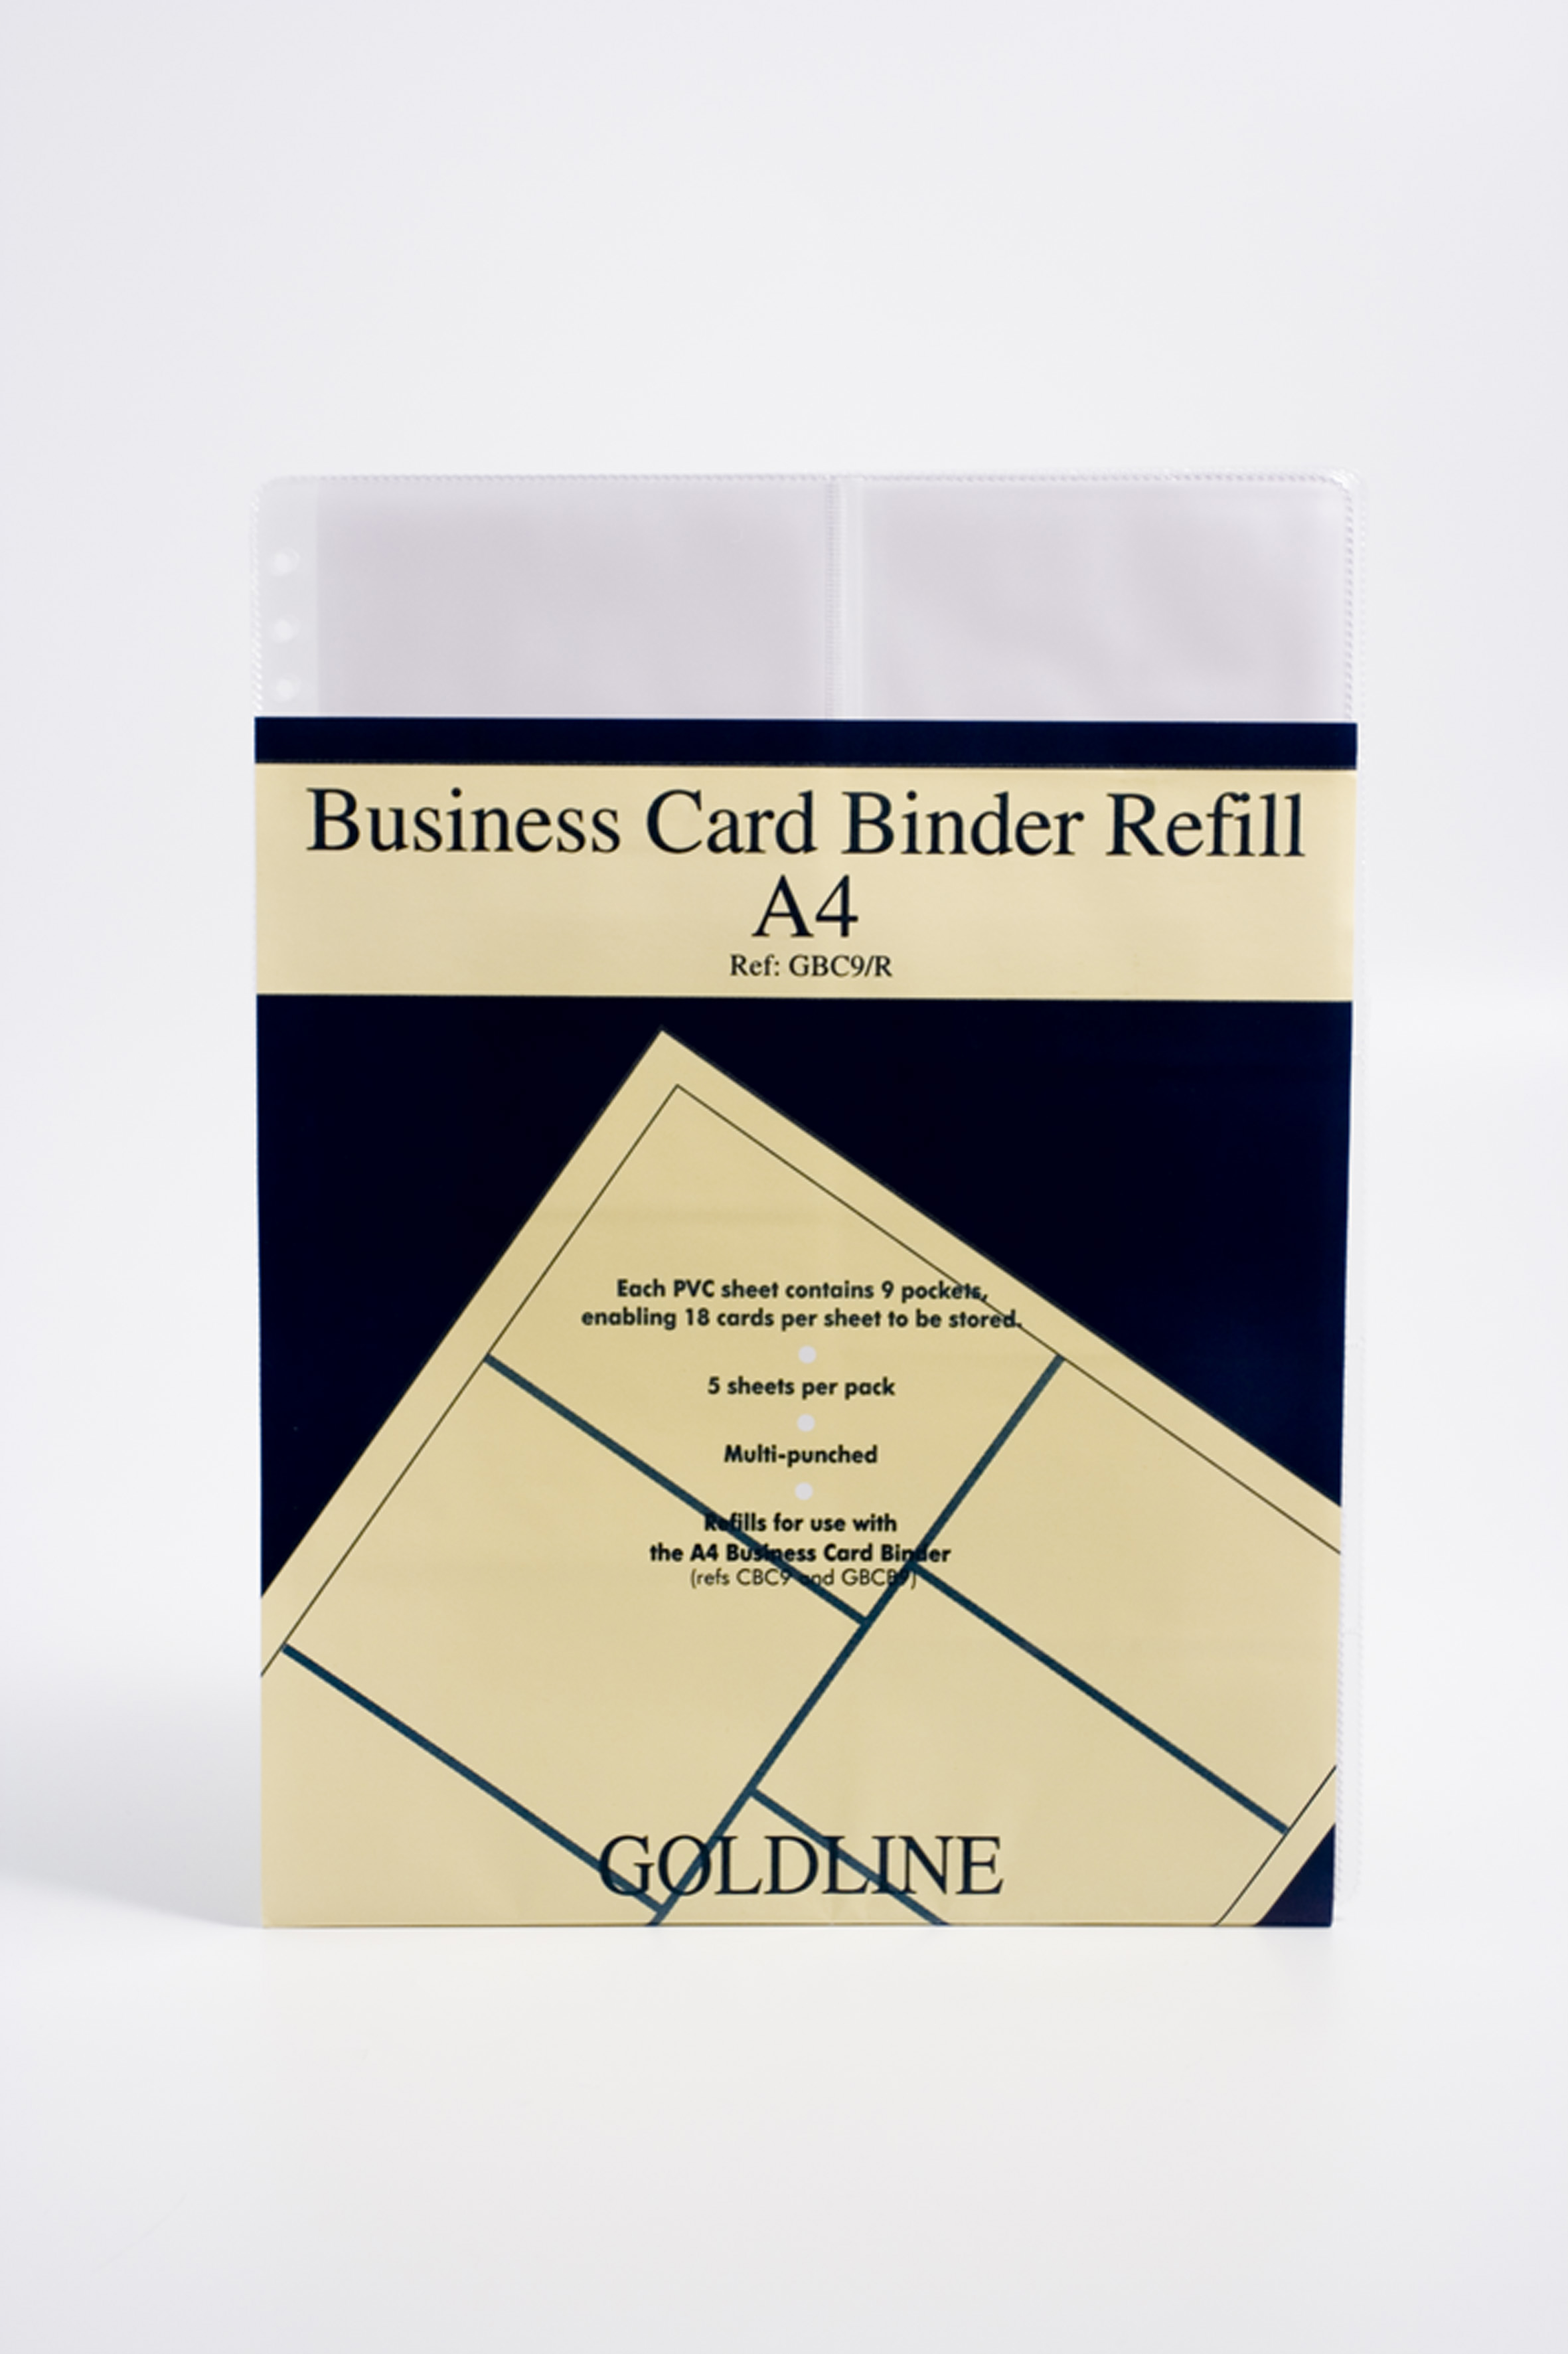 GDline Business Card Binder Refill A4 PK